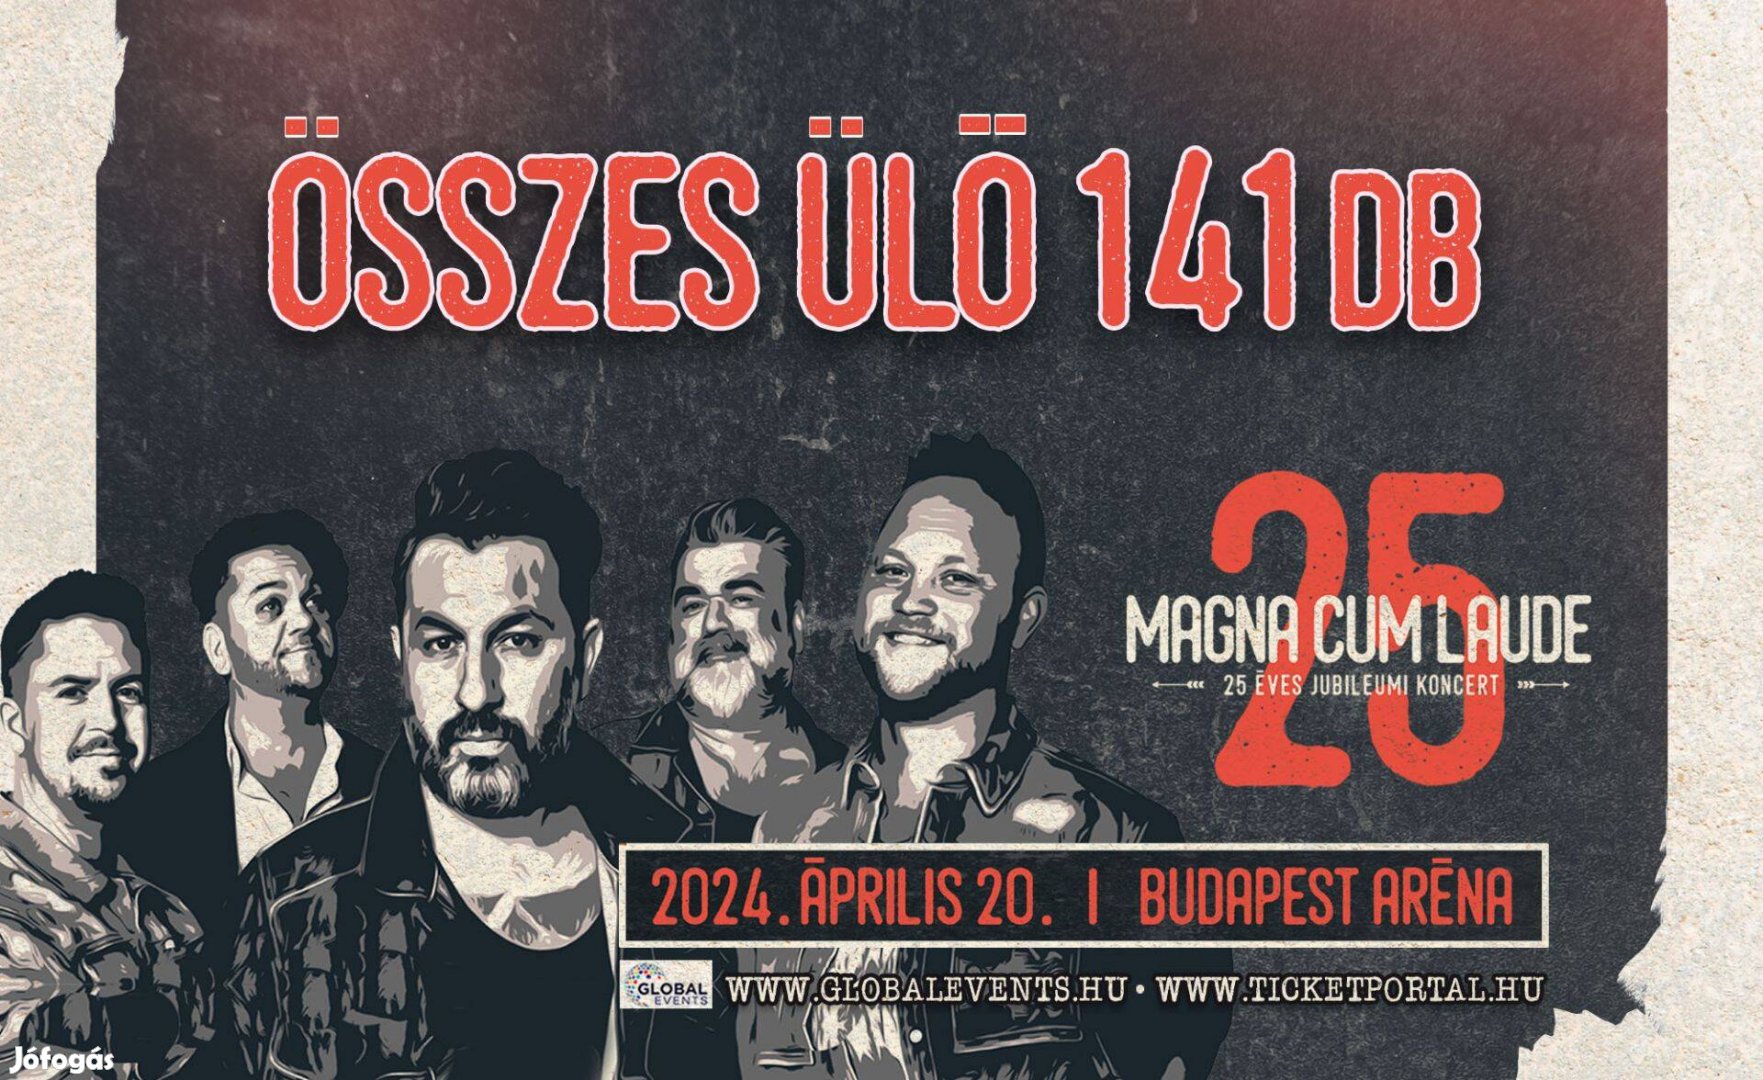 Magna Cum Laude 25. jubileumi koncert / Budapest / 04.20